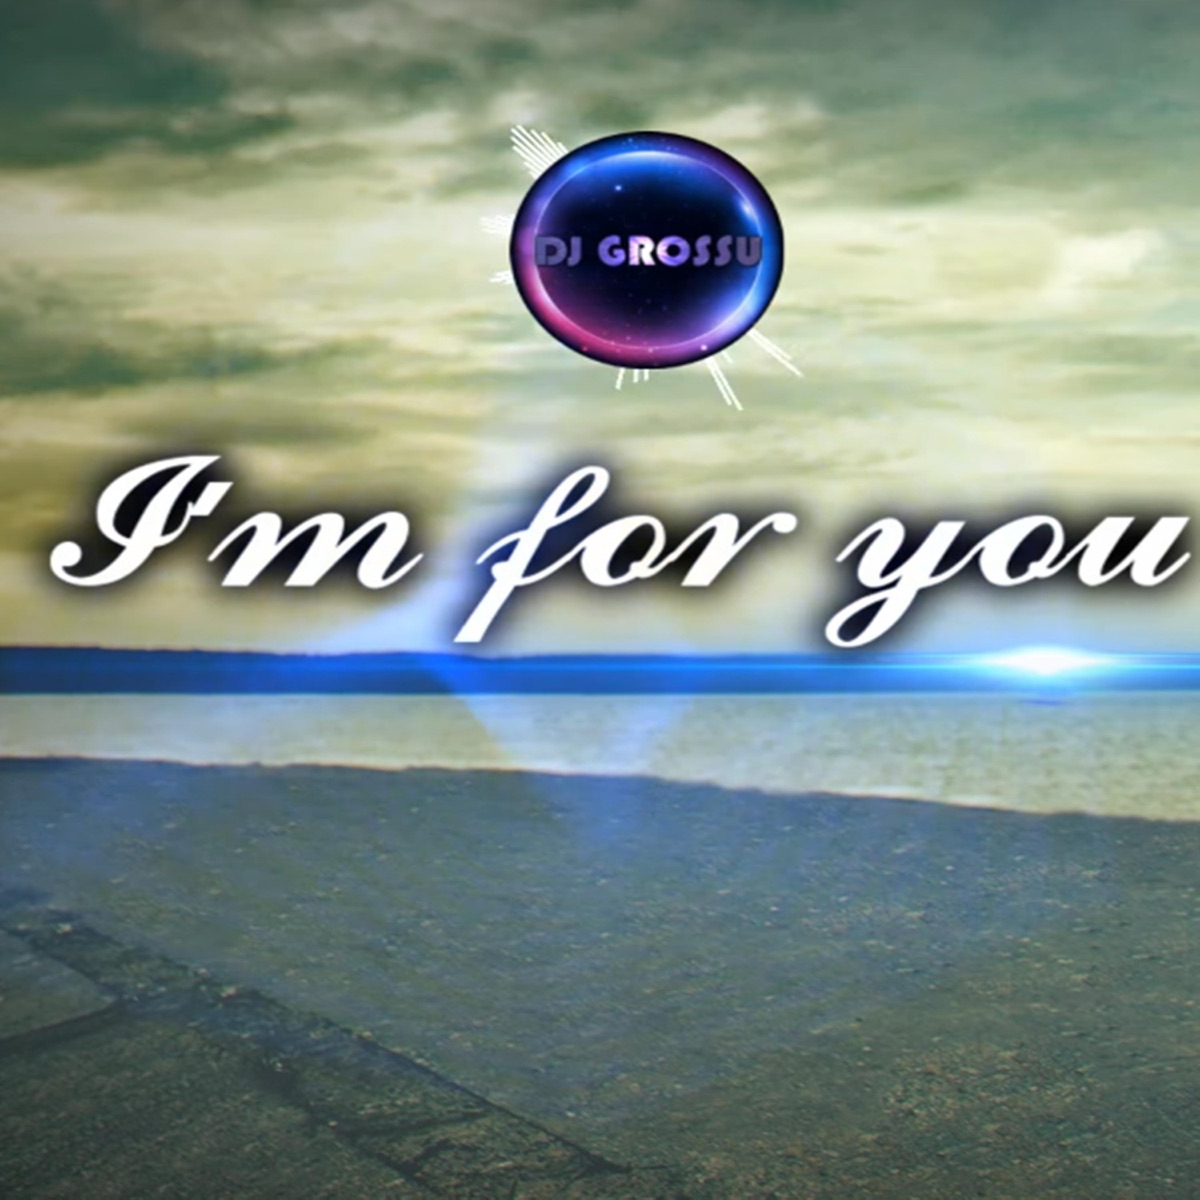 I'm For You - Single – Album par DJ GROSSU – Apple Music